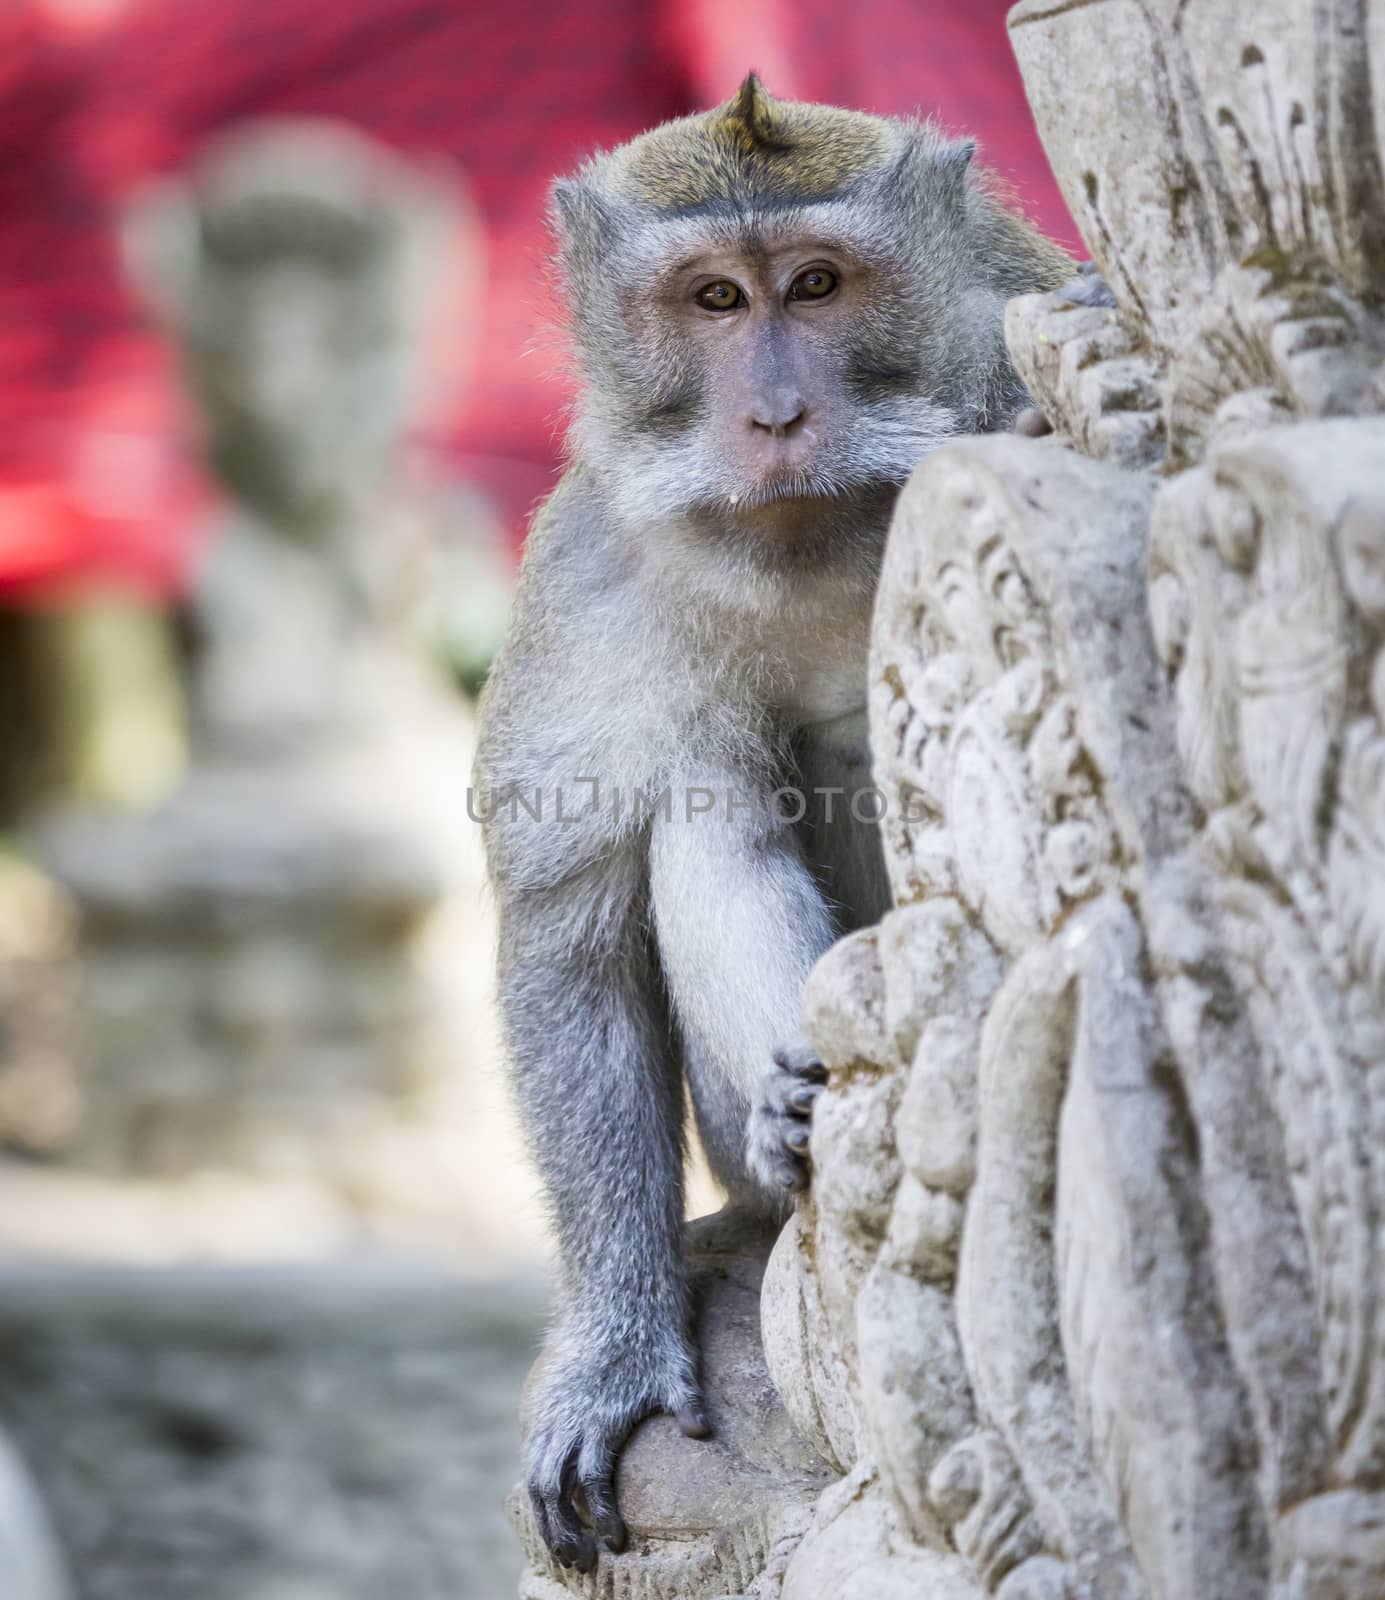 Monkey at Sacred Monkey Forest, Ubud, Bali, Indonesia by mariusz_prusaczyk